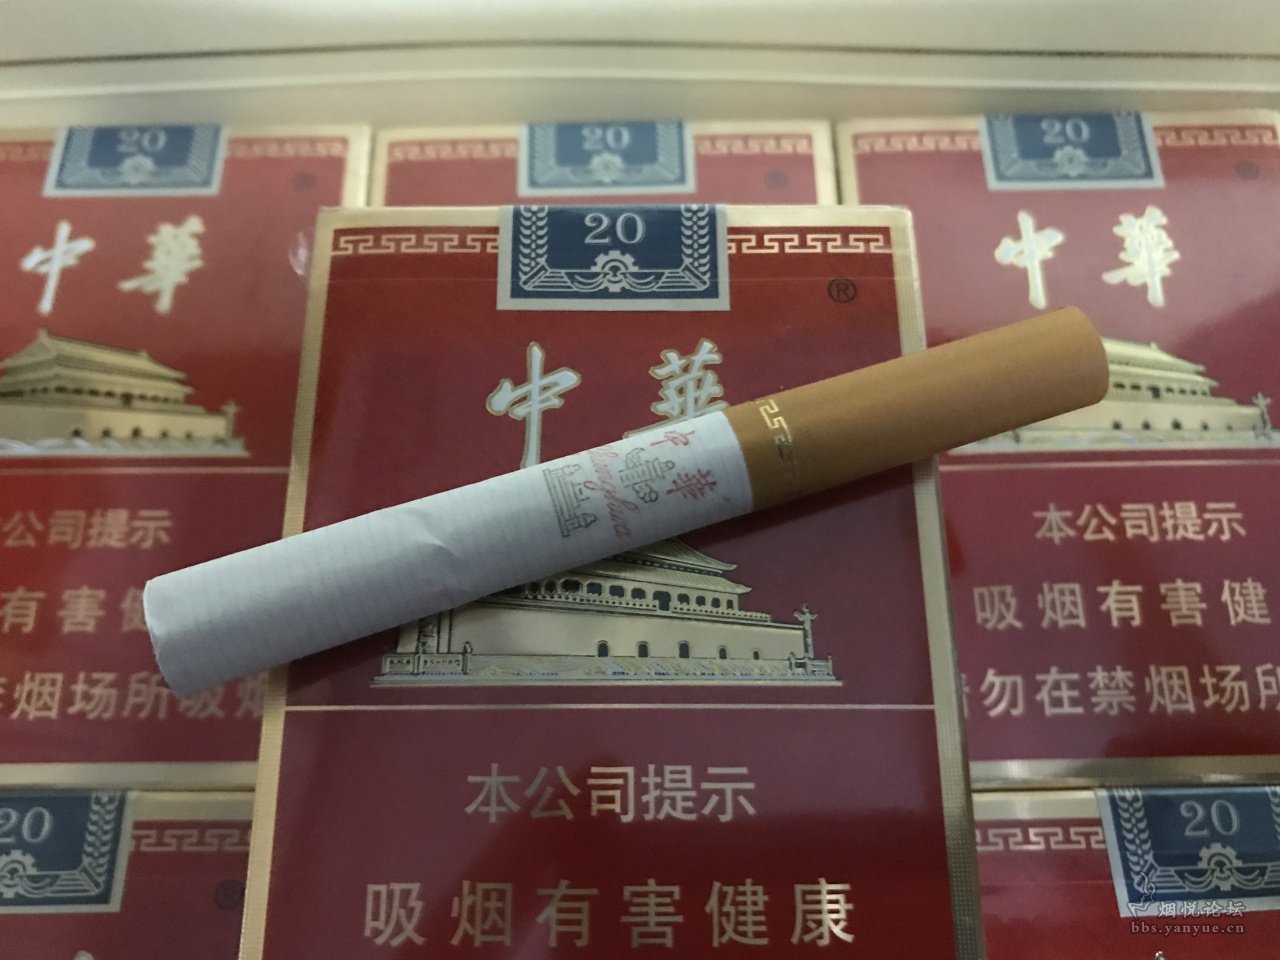 金支中华 - 香烟品鉴 - 烟悦网论坛